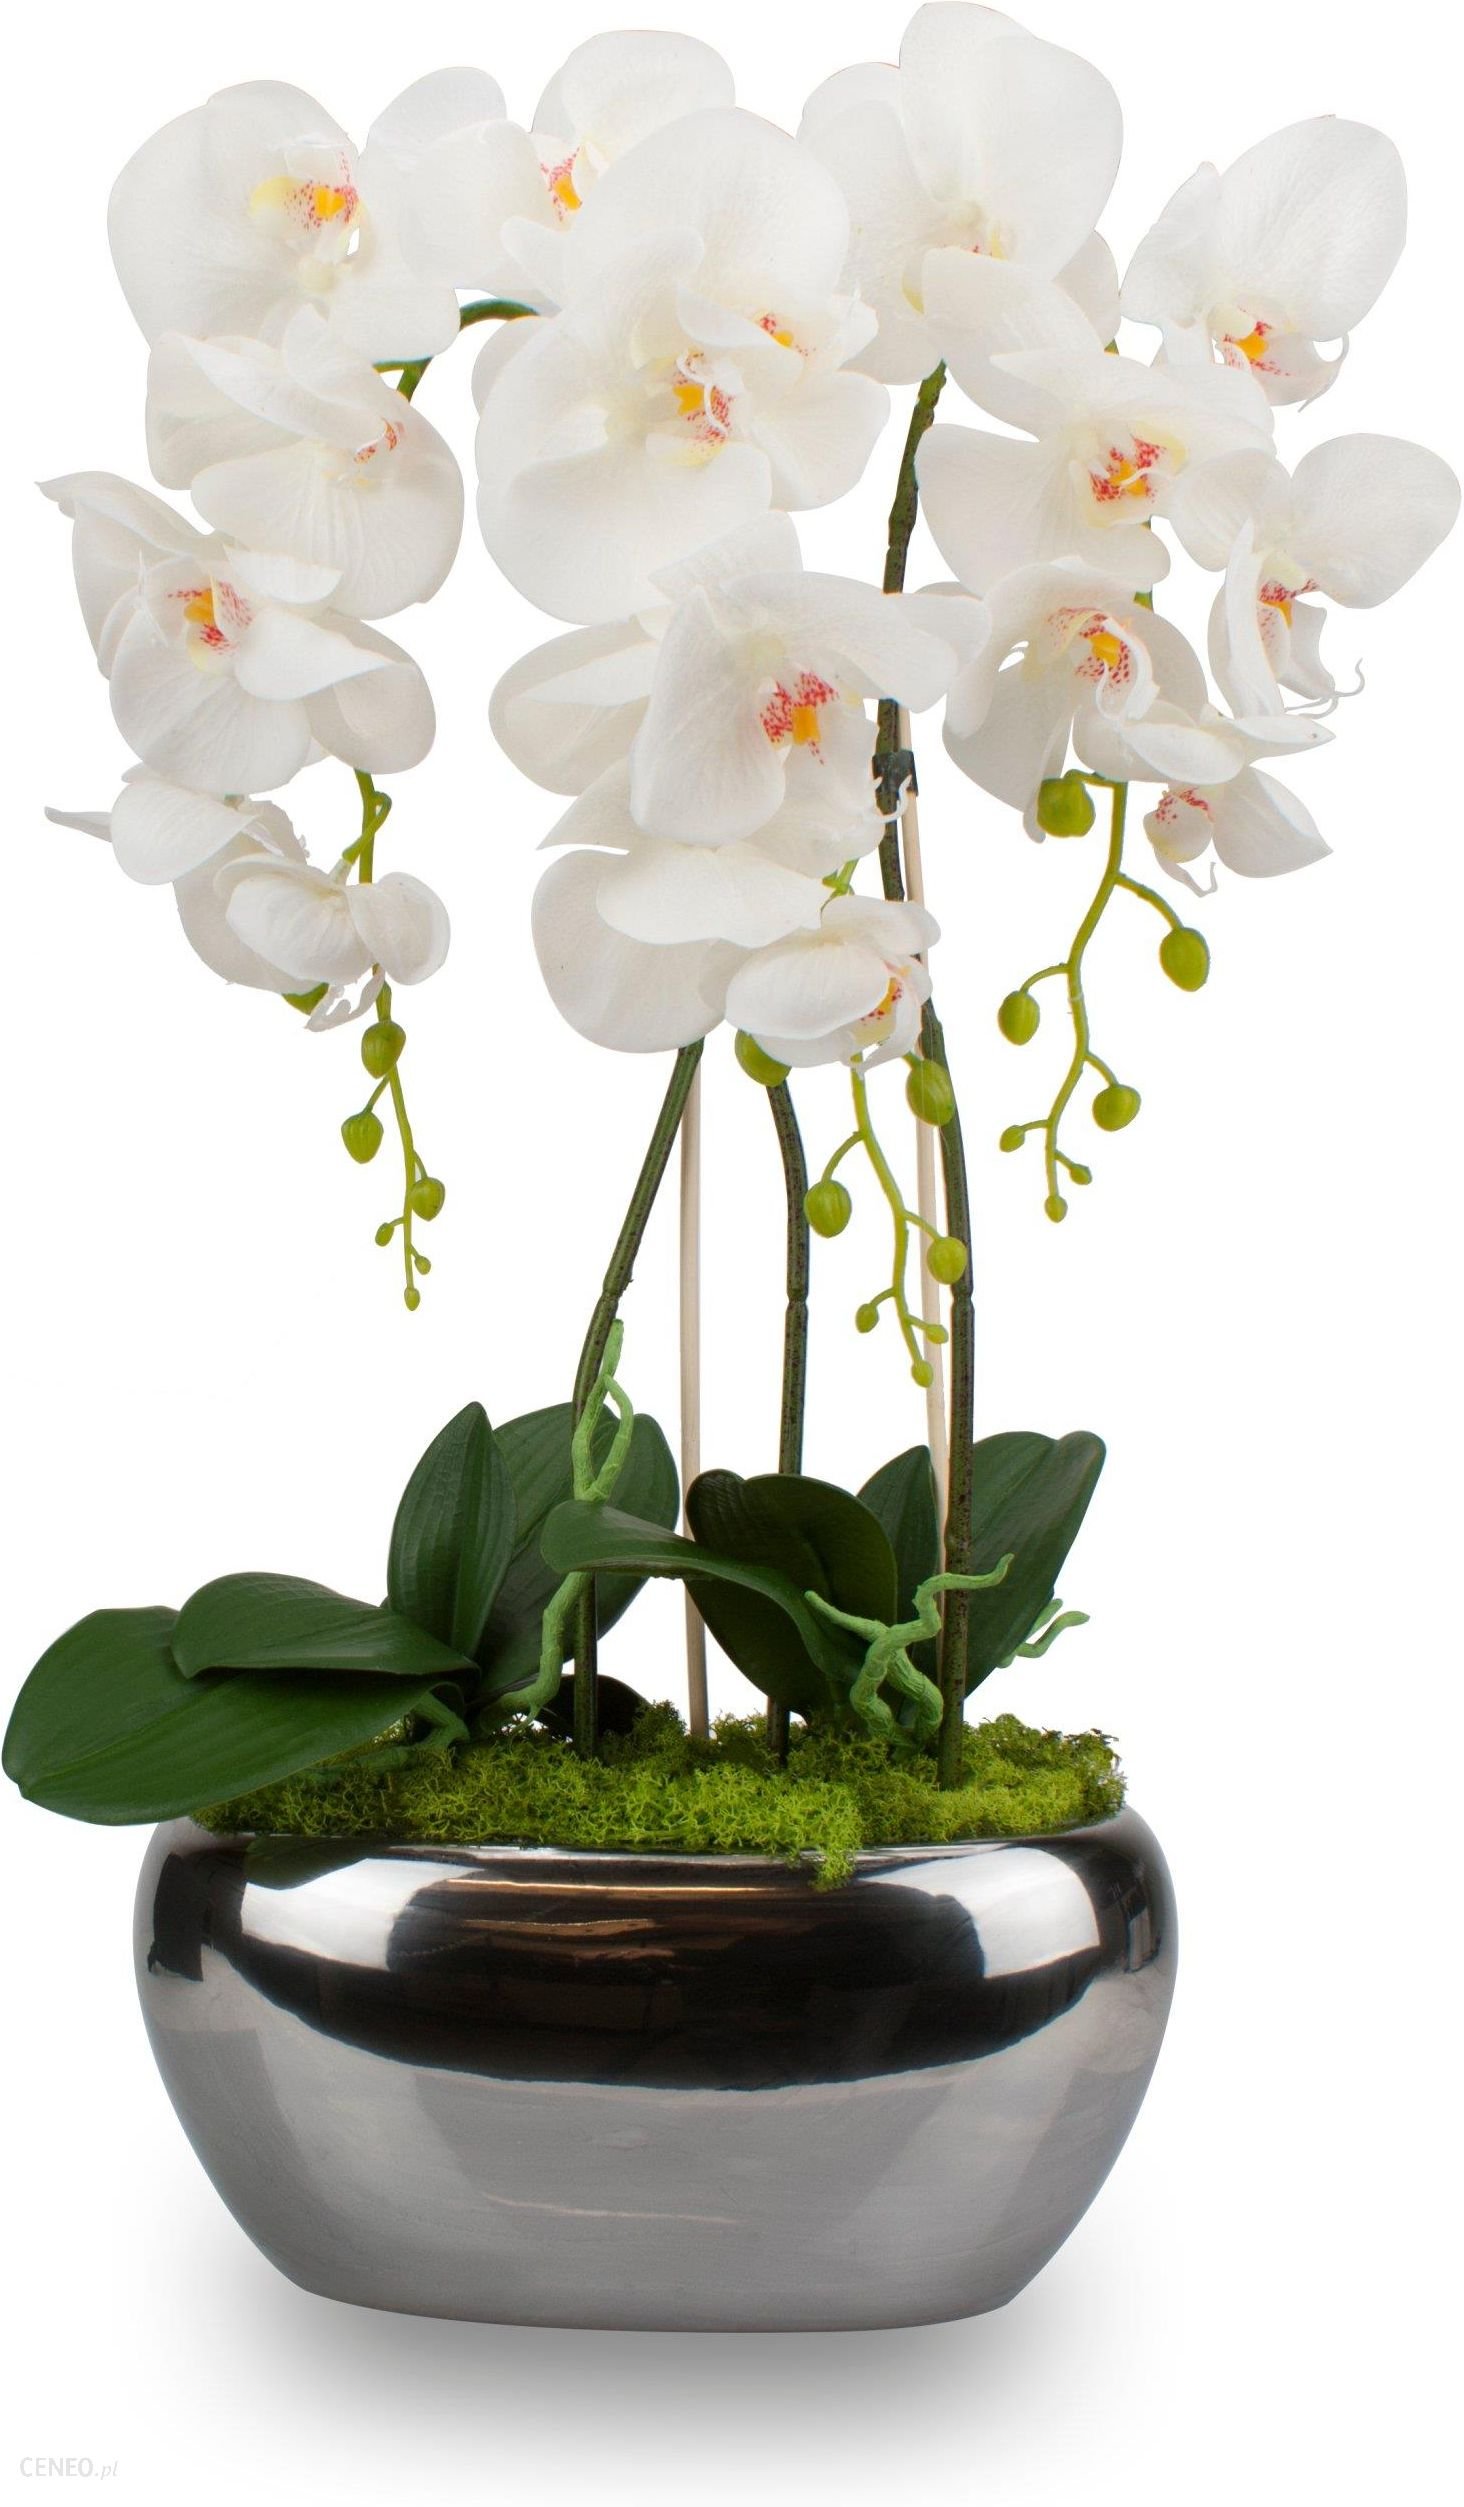 Орхидея в горшке купить в интернет. Орхидея Вольтера. Фаленопсис в горшке. Искусственная Орхидея в горшке.